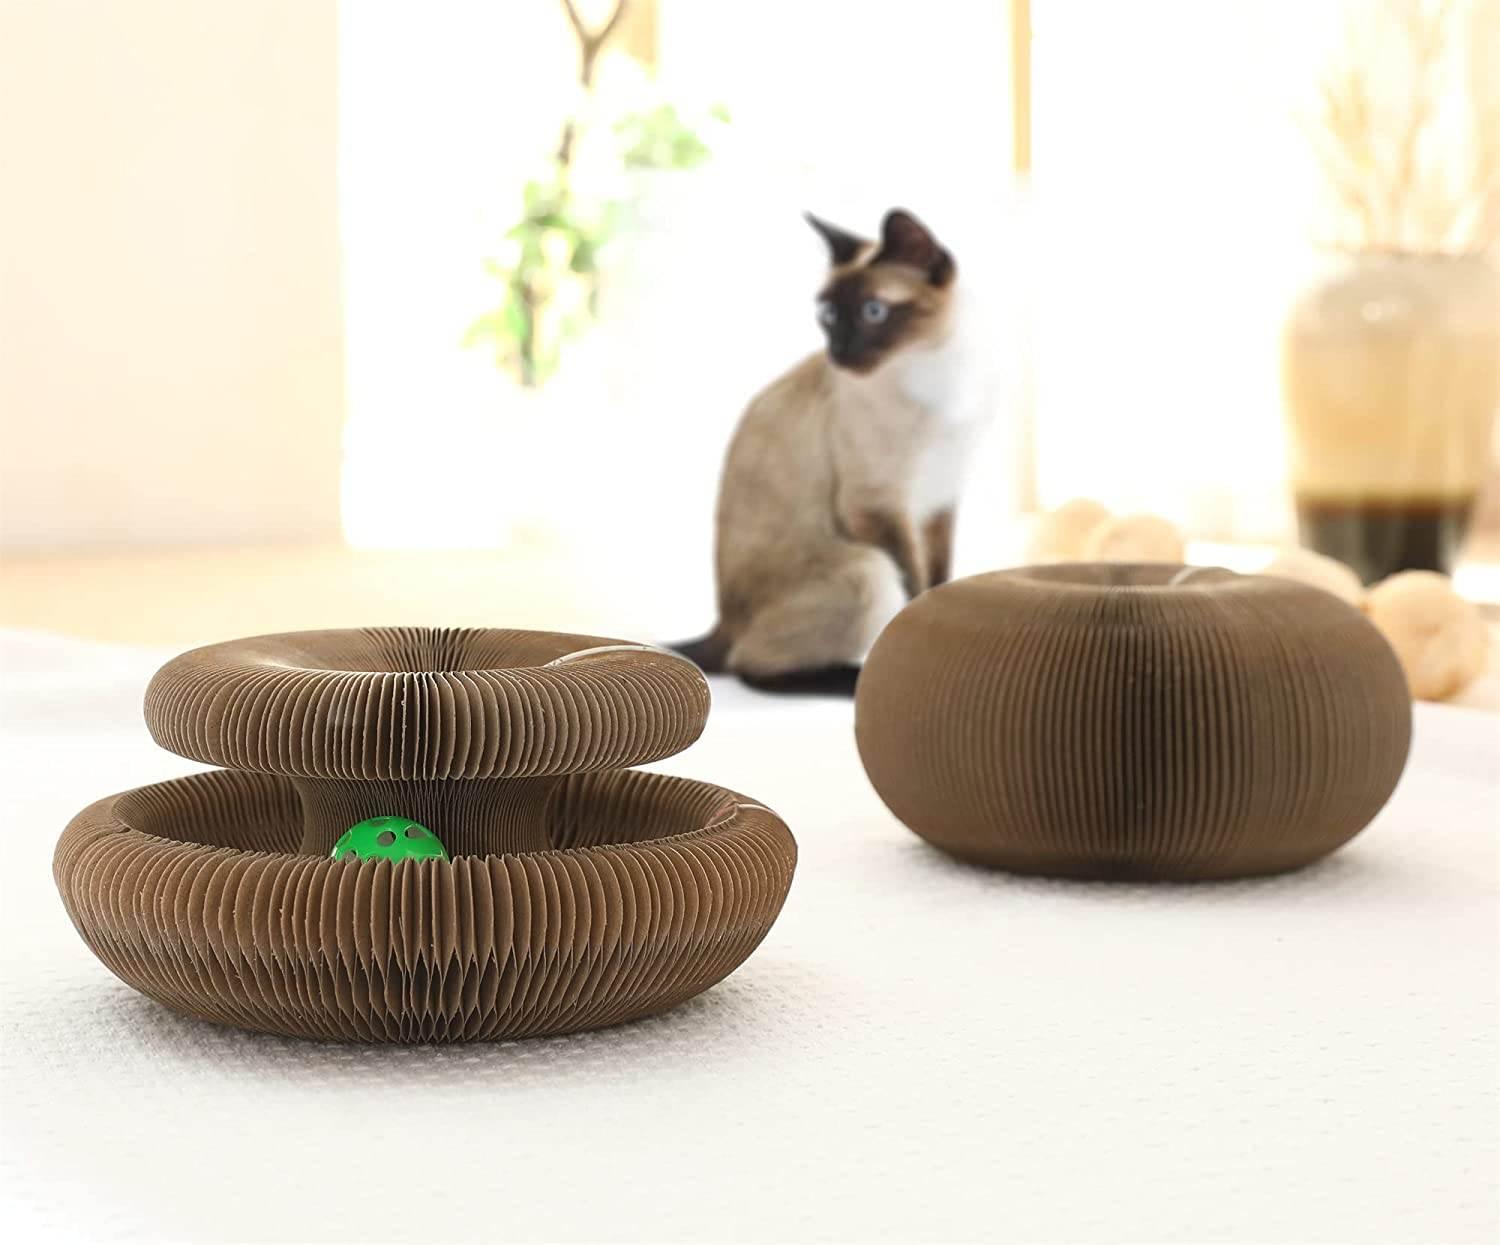 Katzenburg™ - Spielzeug aus Pappe für Katzen | 50% RABATT